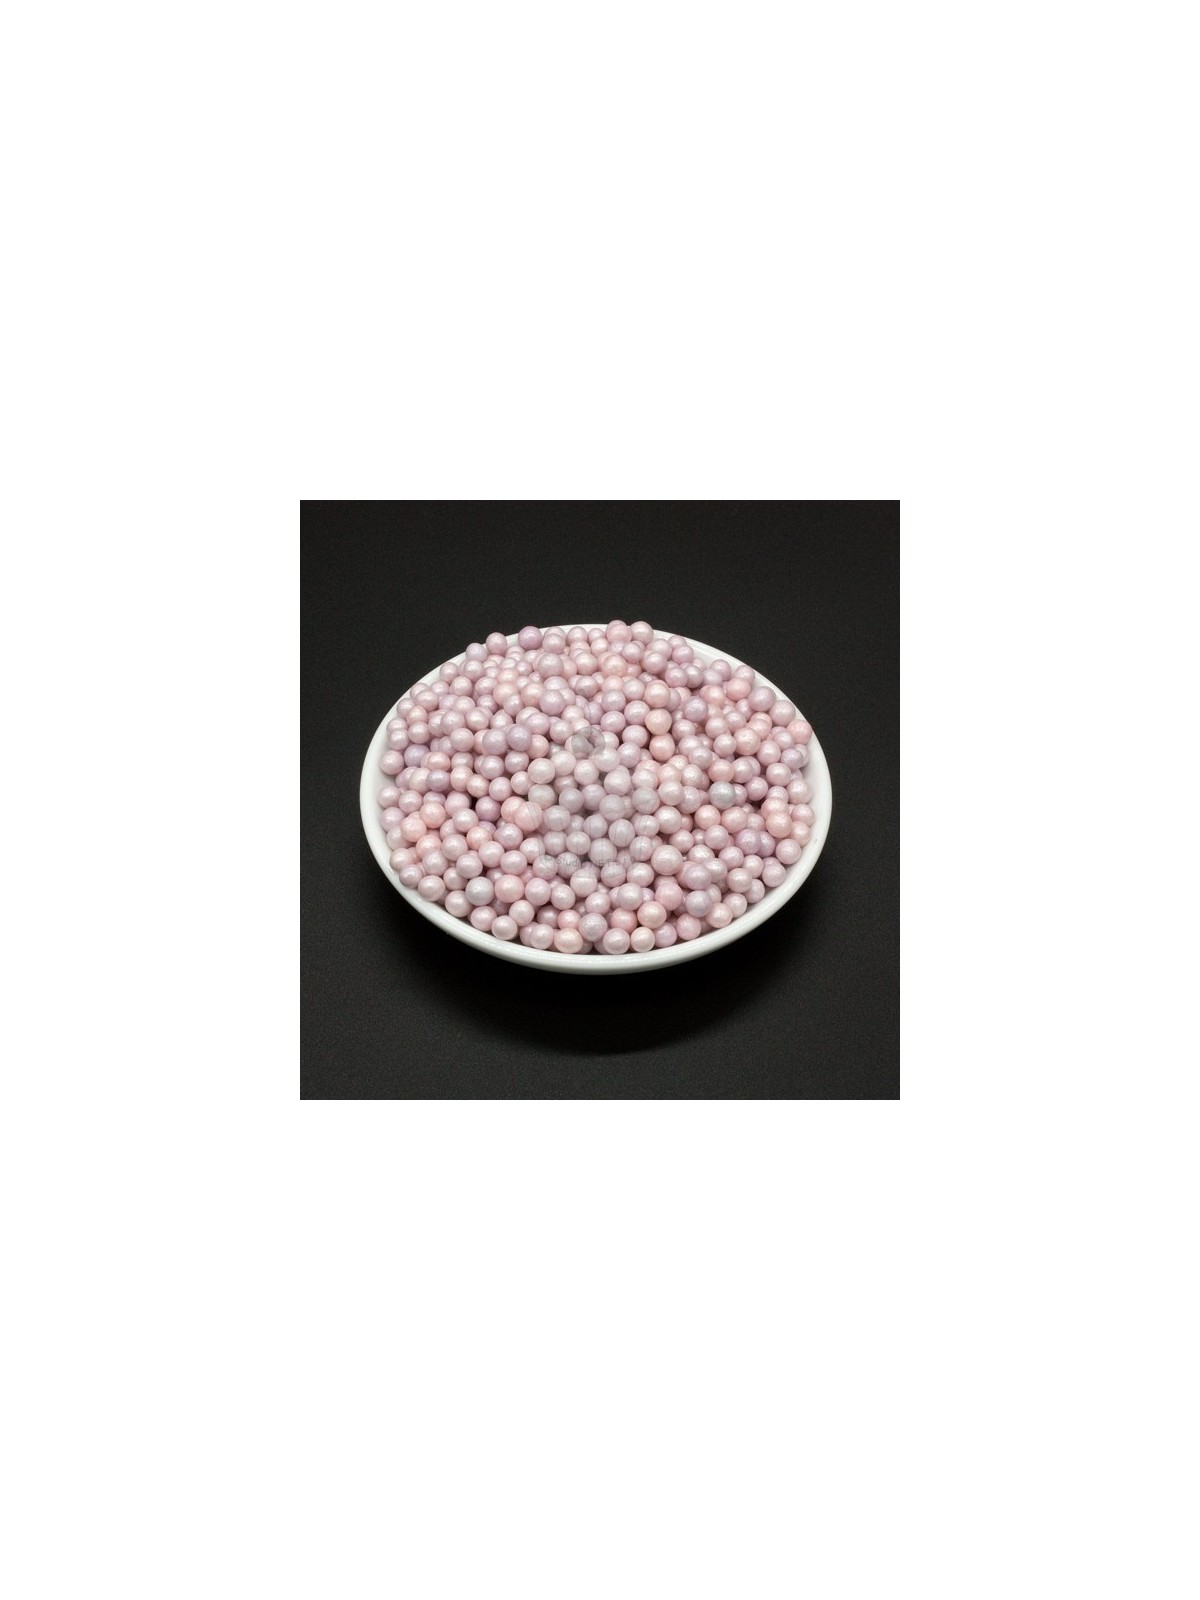 Cukrové perličky 4mm - fialková perleť - 100g